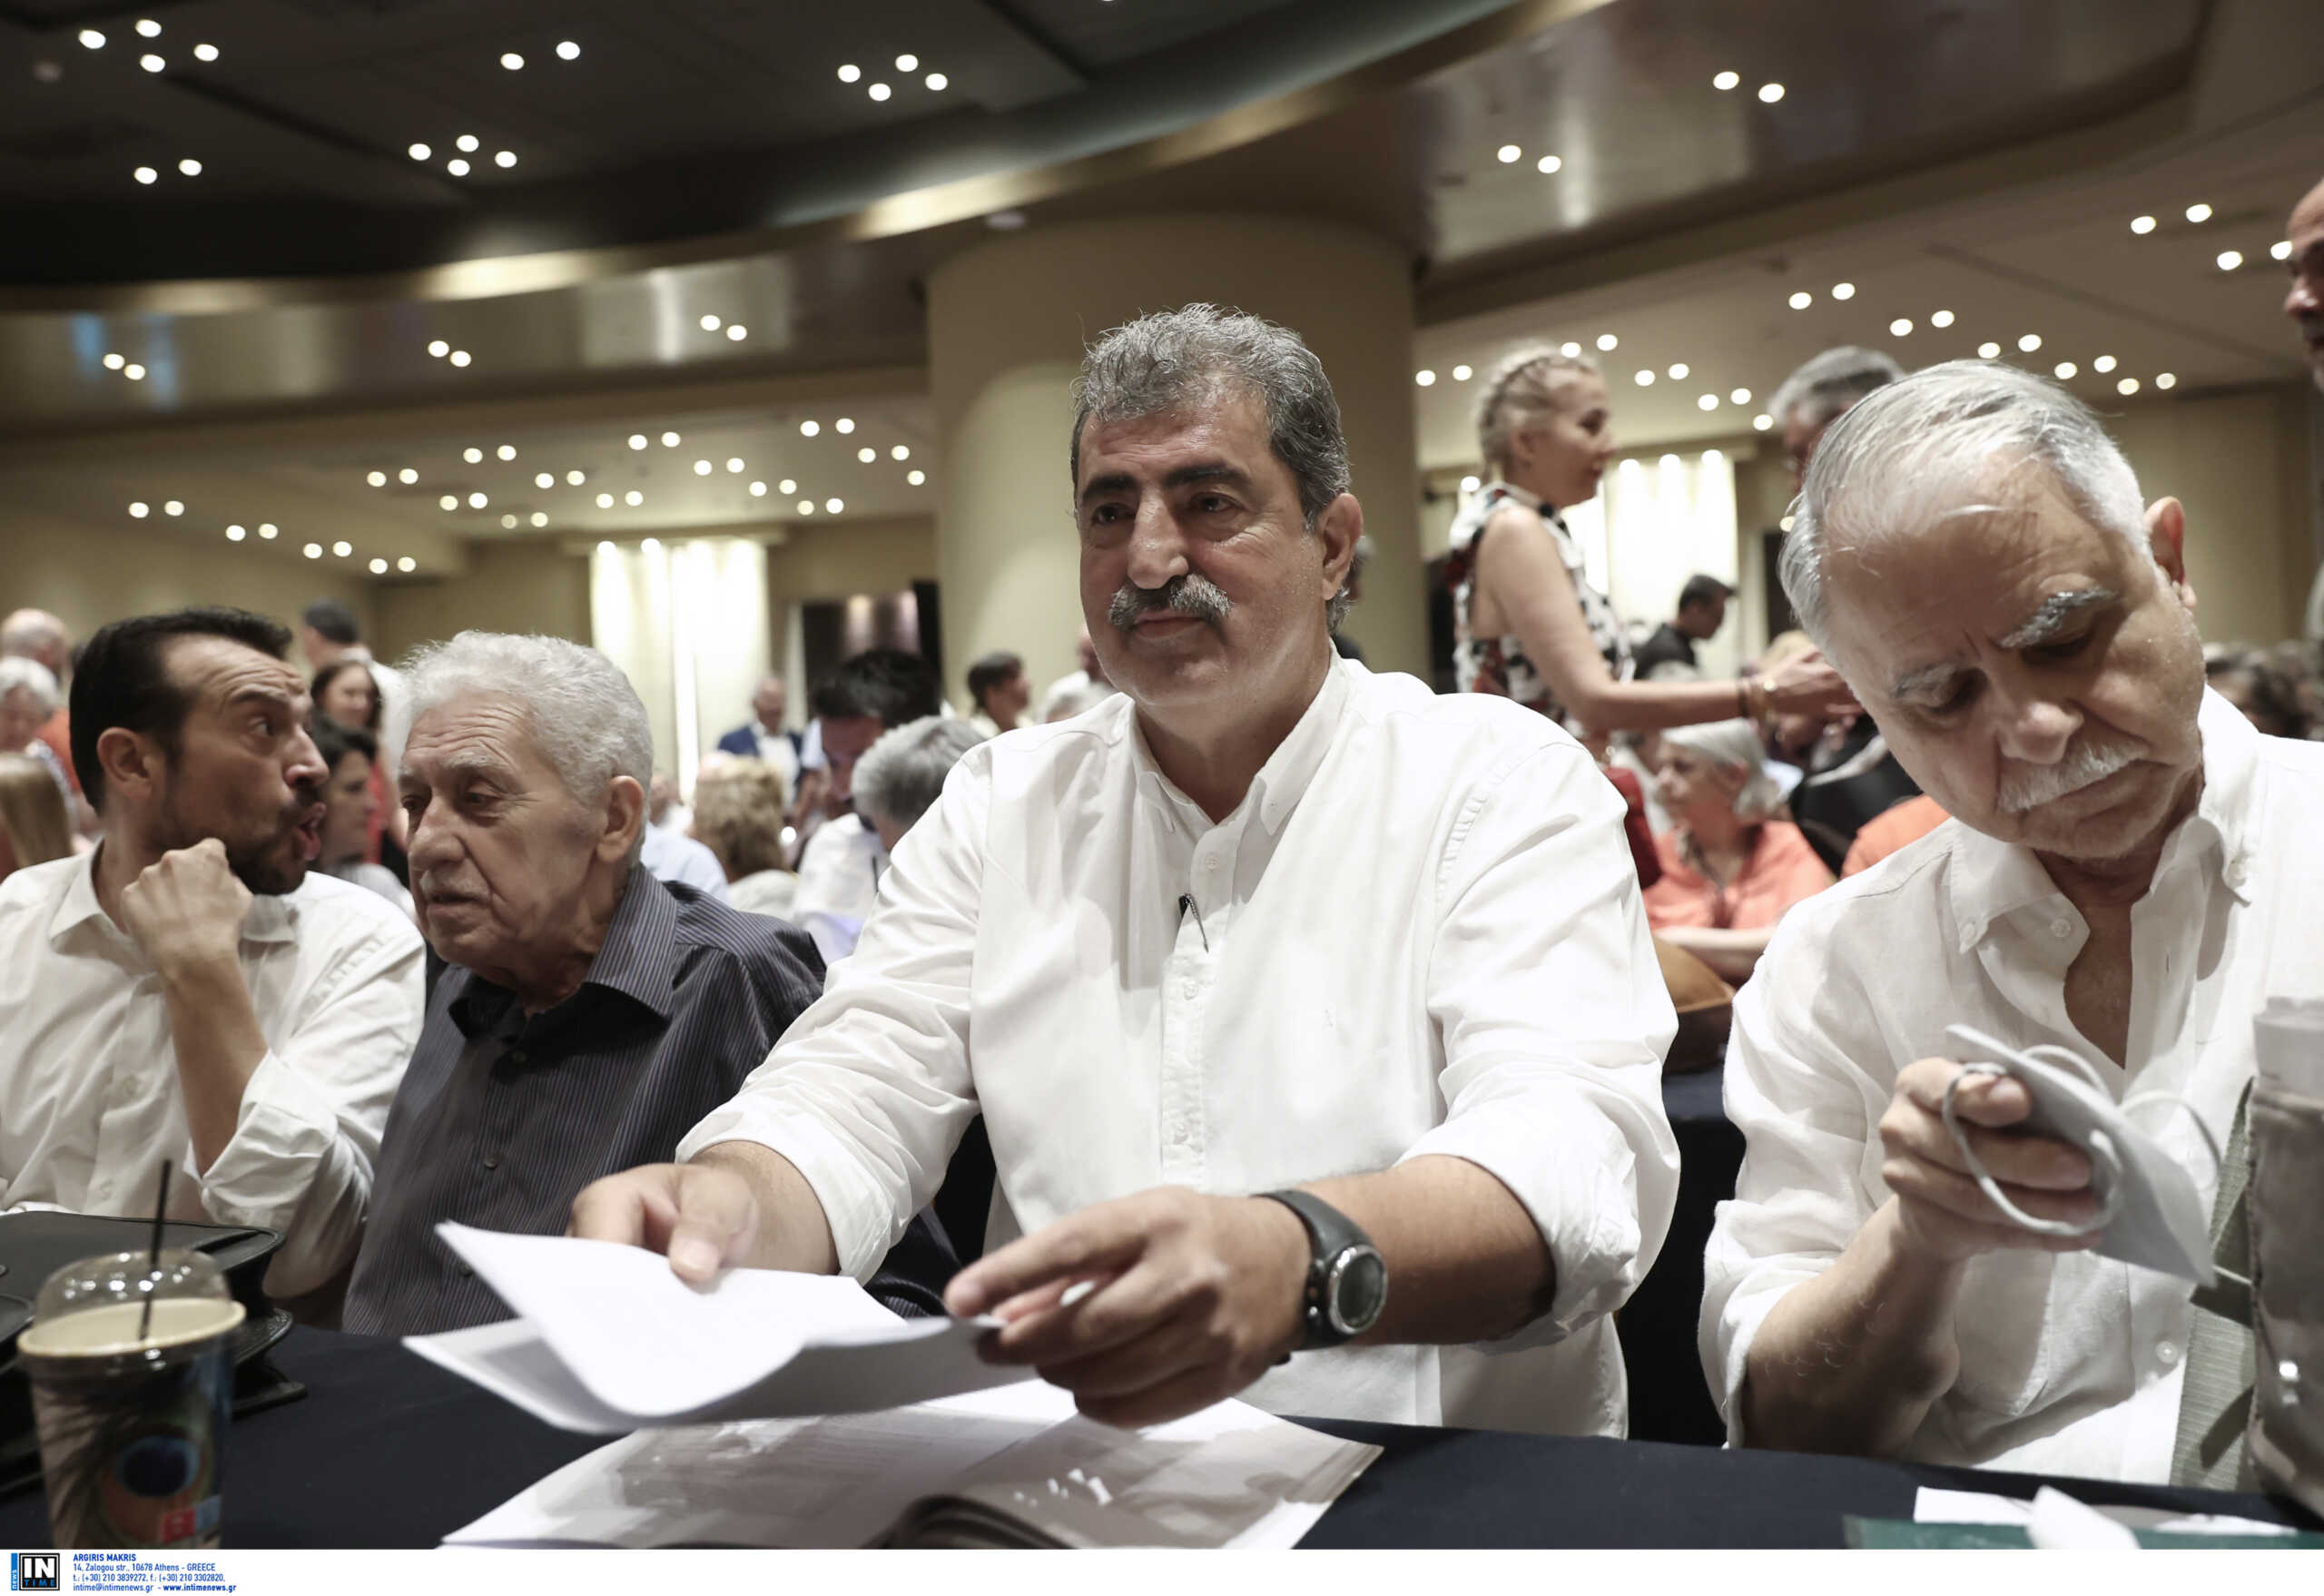 Εκλογές ΣΥΡΙΖΑ: Ο Πολάκης απαντά στην Αχτσιόγλου – «Εμείς μόνο σε πεντακάθαρα νερά κολυμπάμε»